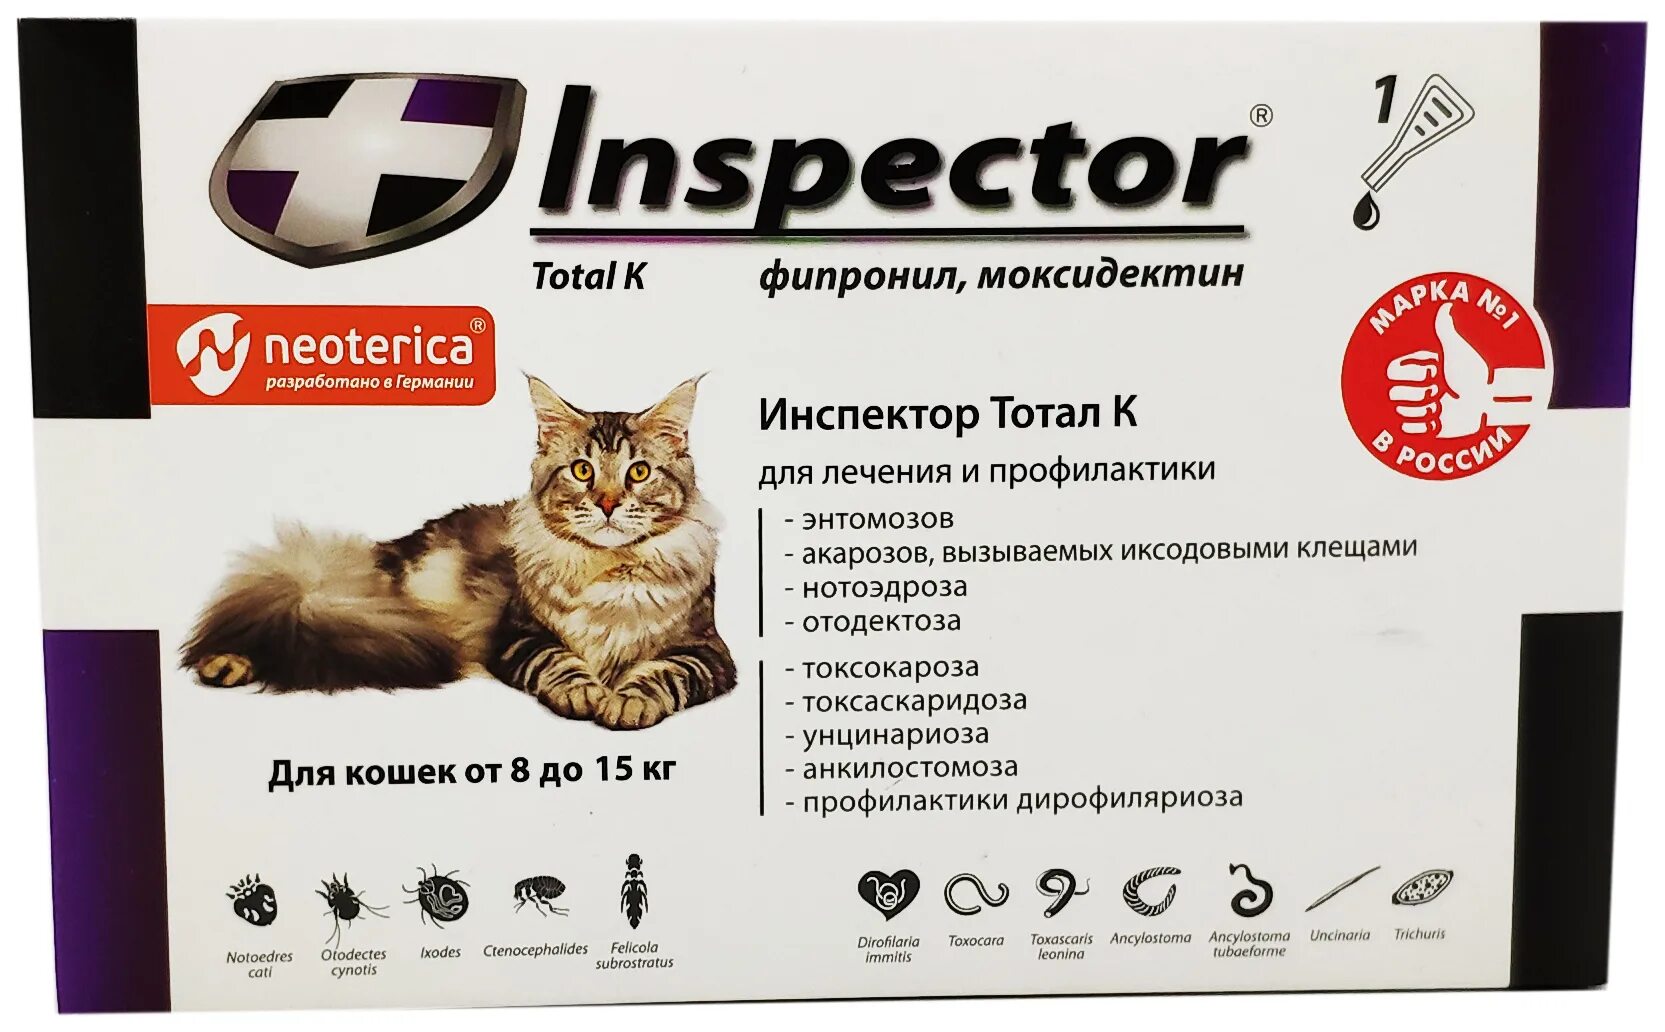 Inspector total k капли от блох, клещей и гельминтов для кошек от 4 до 8 кг. Inspector Quadro для кошек от 8 до 15 кг. Инспектор Квадро к капли для кошек 8-15кг 1,5мл. Inspector раствор от блох и клещей Quadro к от 4 до 8 кг для кошек. Против клещей для кошек